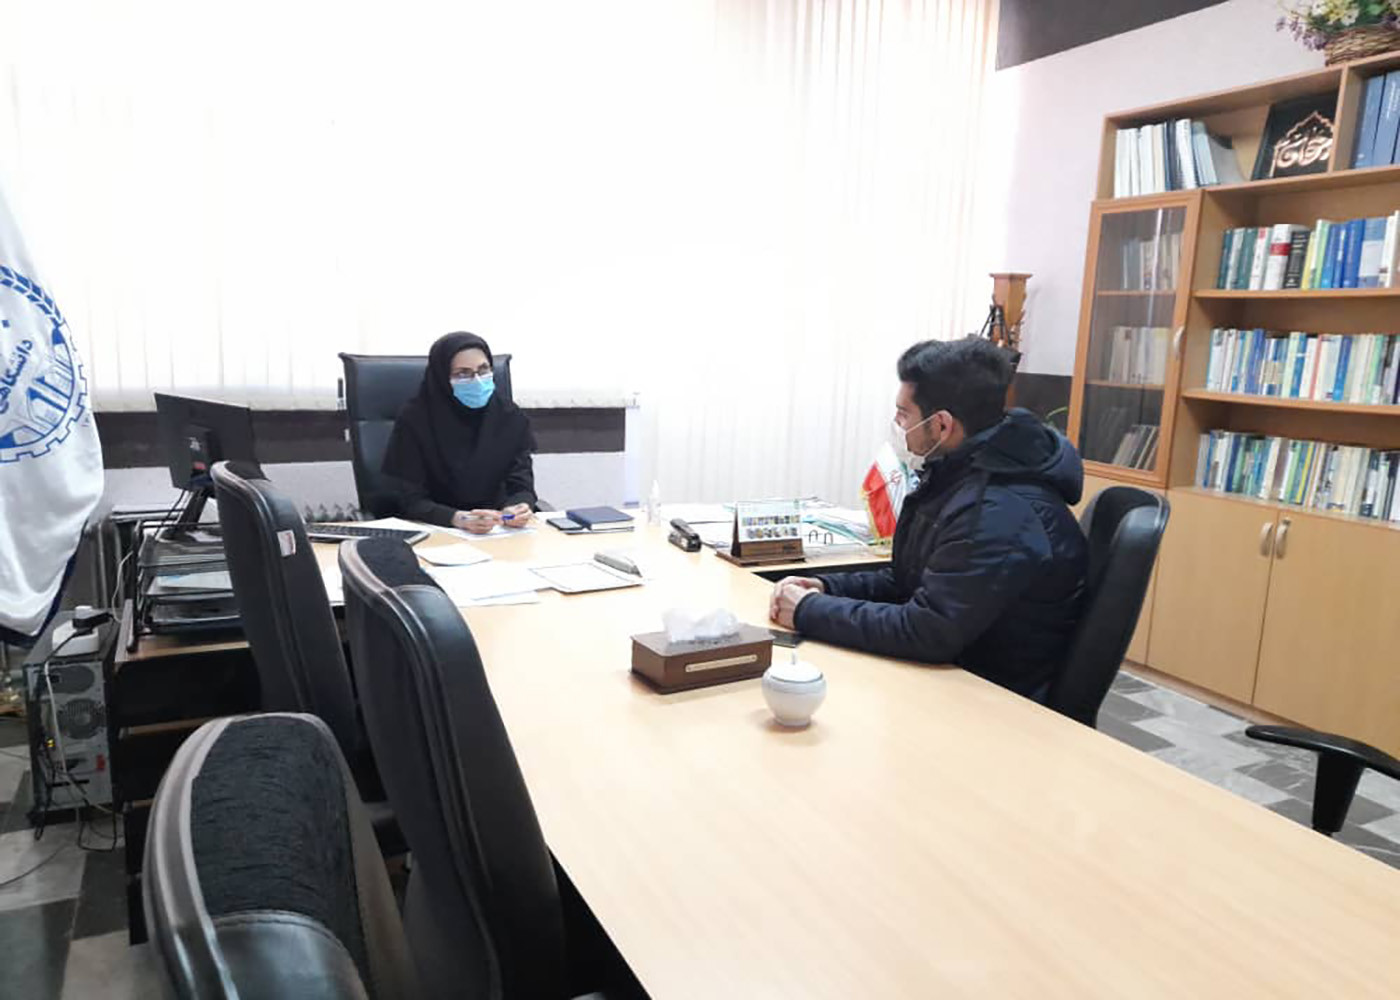 جلسه هماهنگی با تولید کننده انیمیشن در خصوص تهیه کلیپ برای طرح ملی توسعه مشاغل خانگی در زنجان